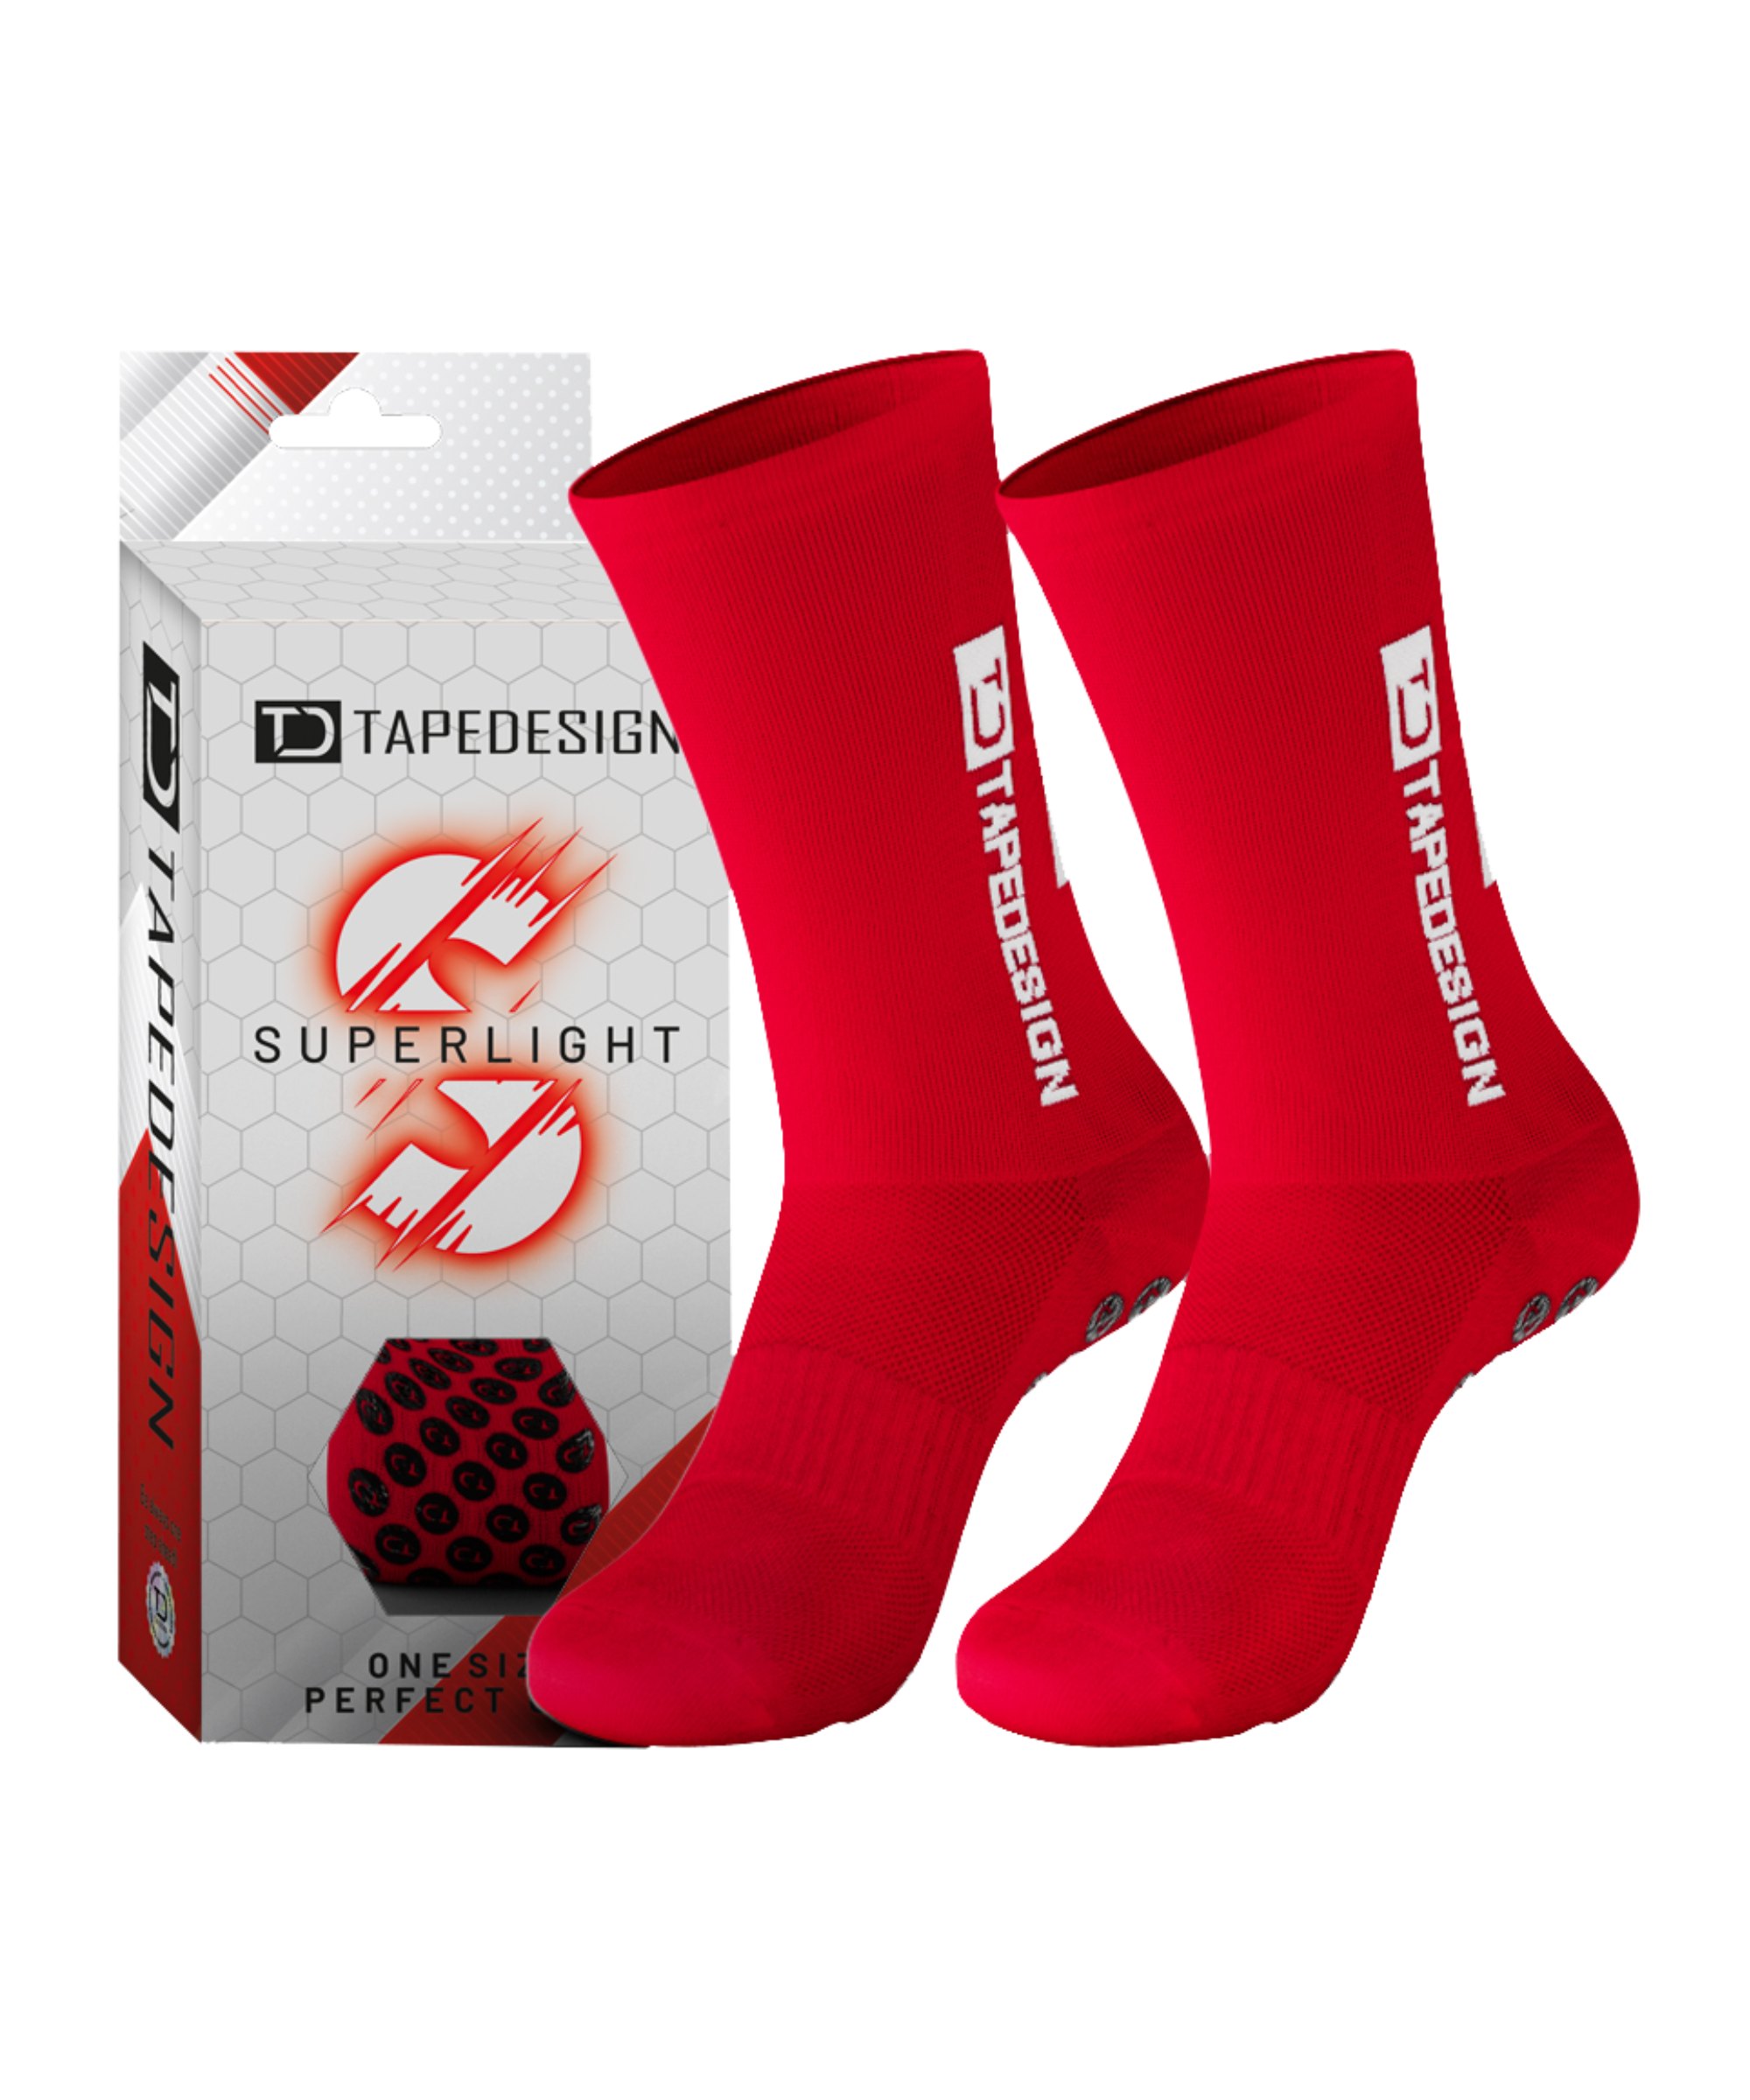 Tapedesign Gripsocks Superlight Socken Rot - rot